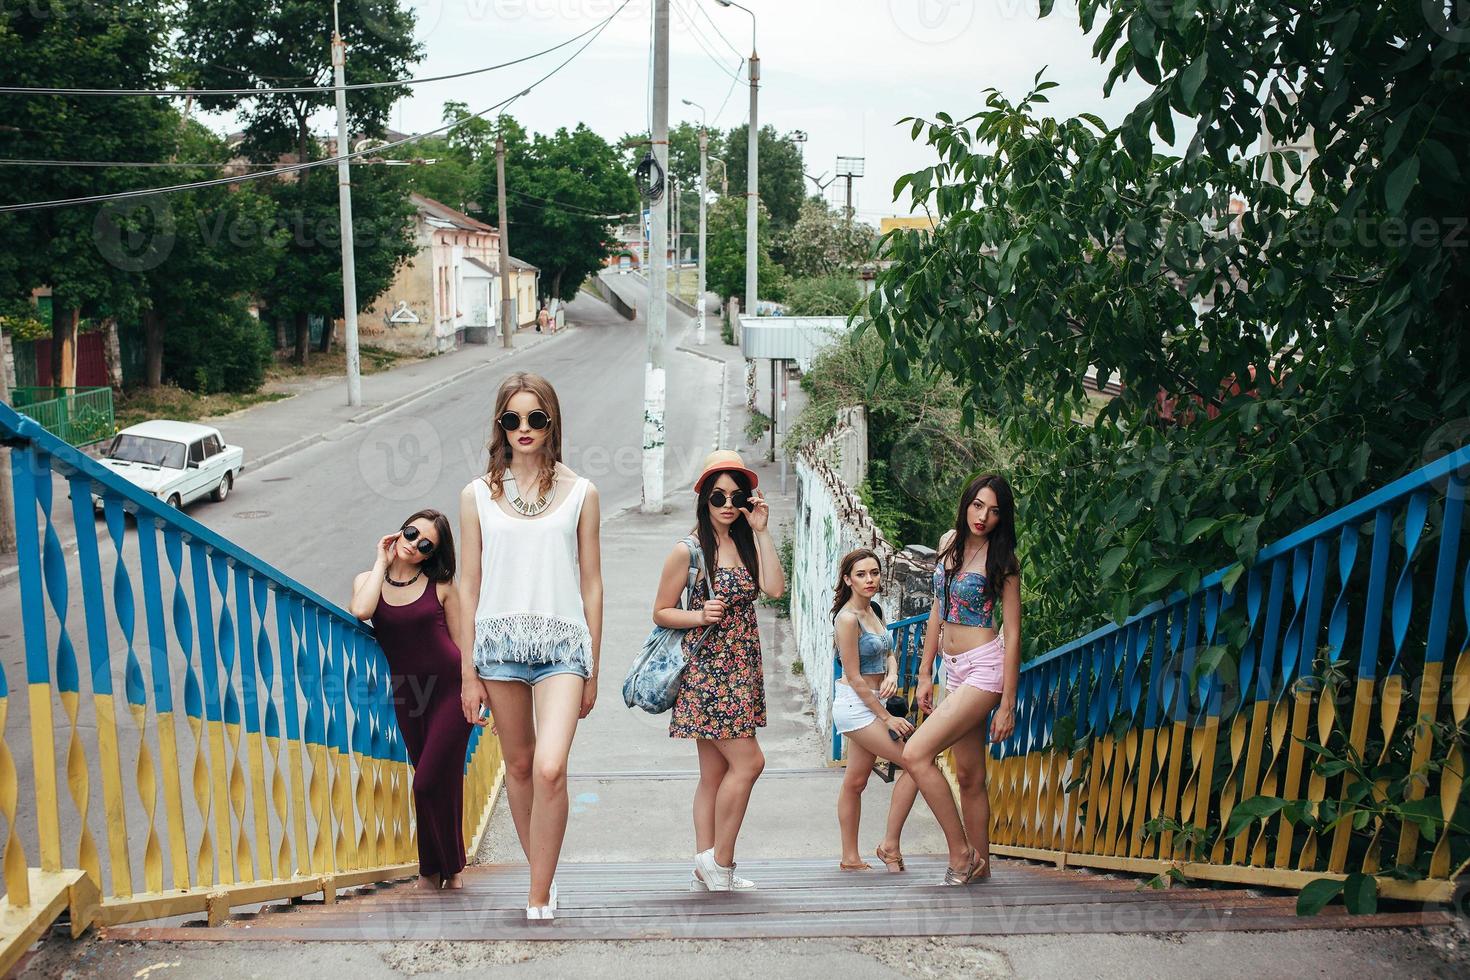 vijf jonge mooie meisjes in de stad foto